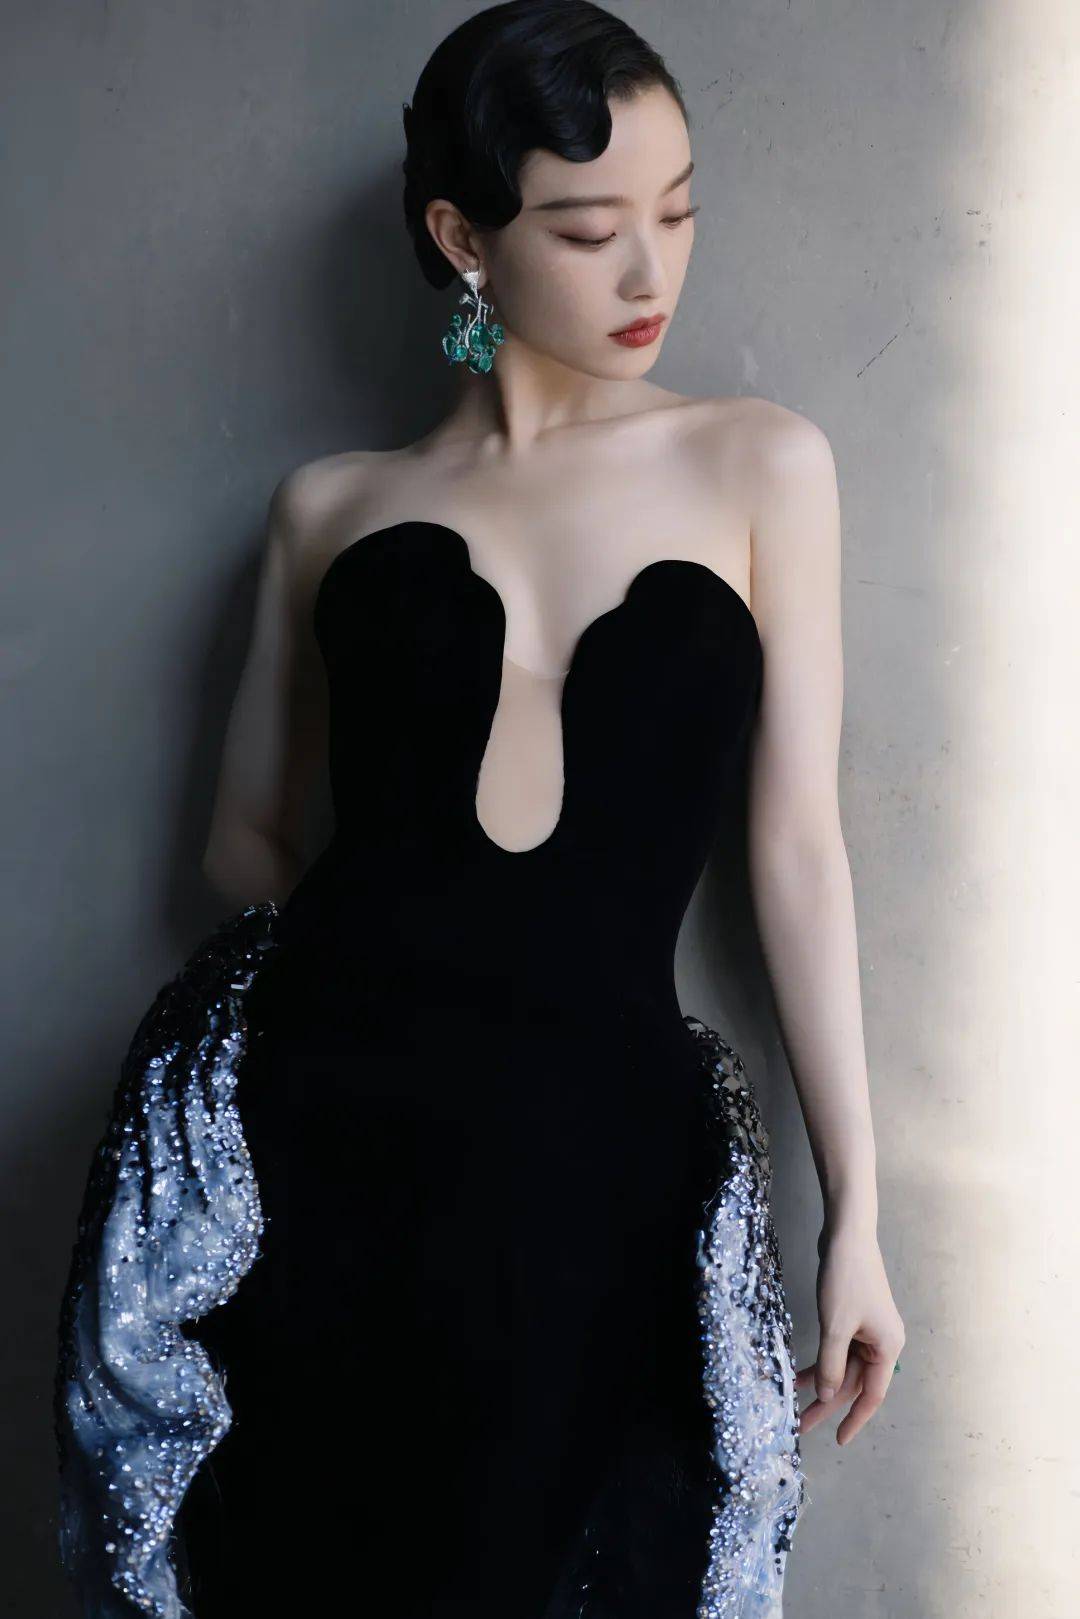 性感迷人!倪妮黑色丝绒长裙,身姿绰约,造型如轻盈舞动的蝴蝶